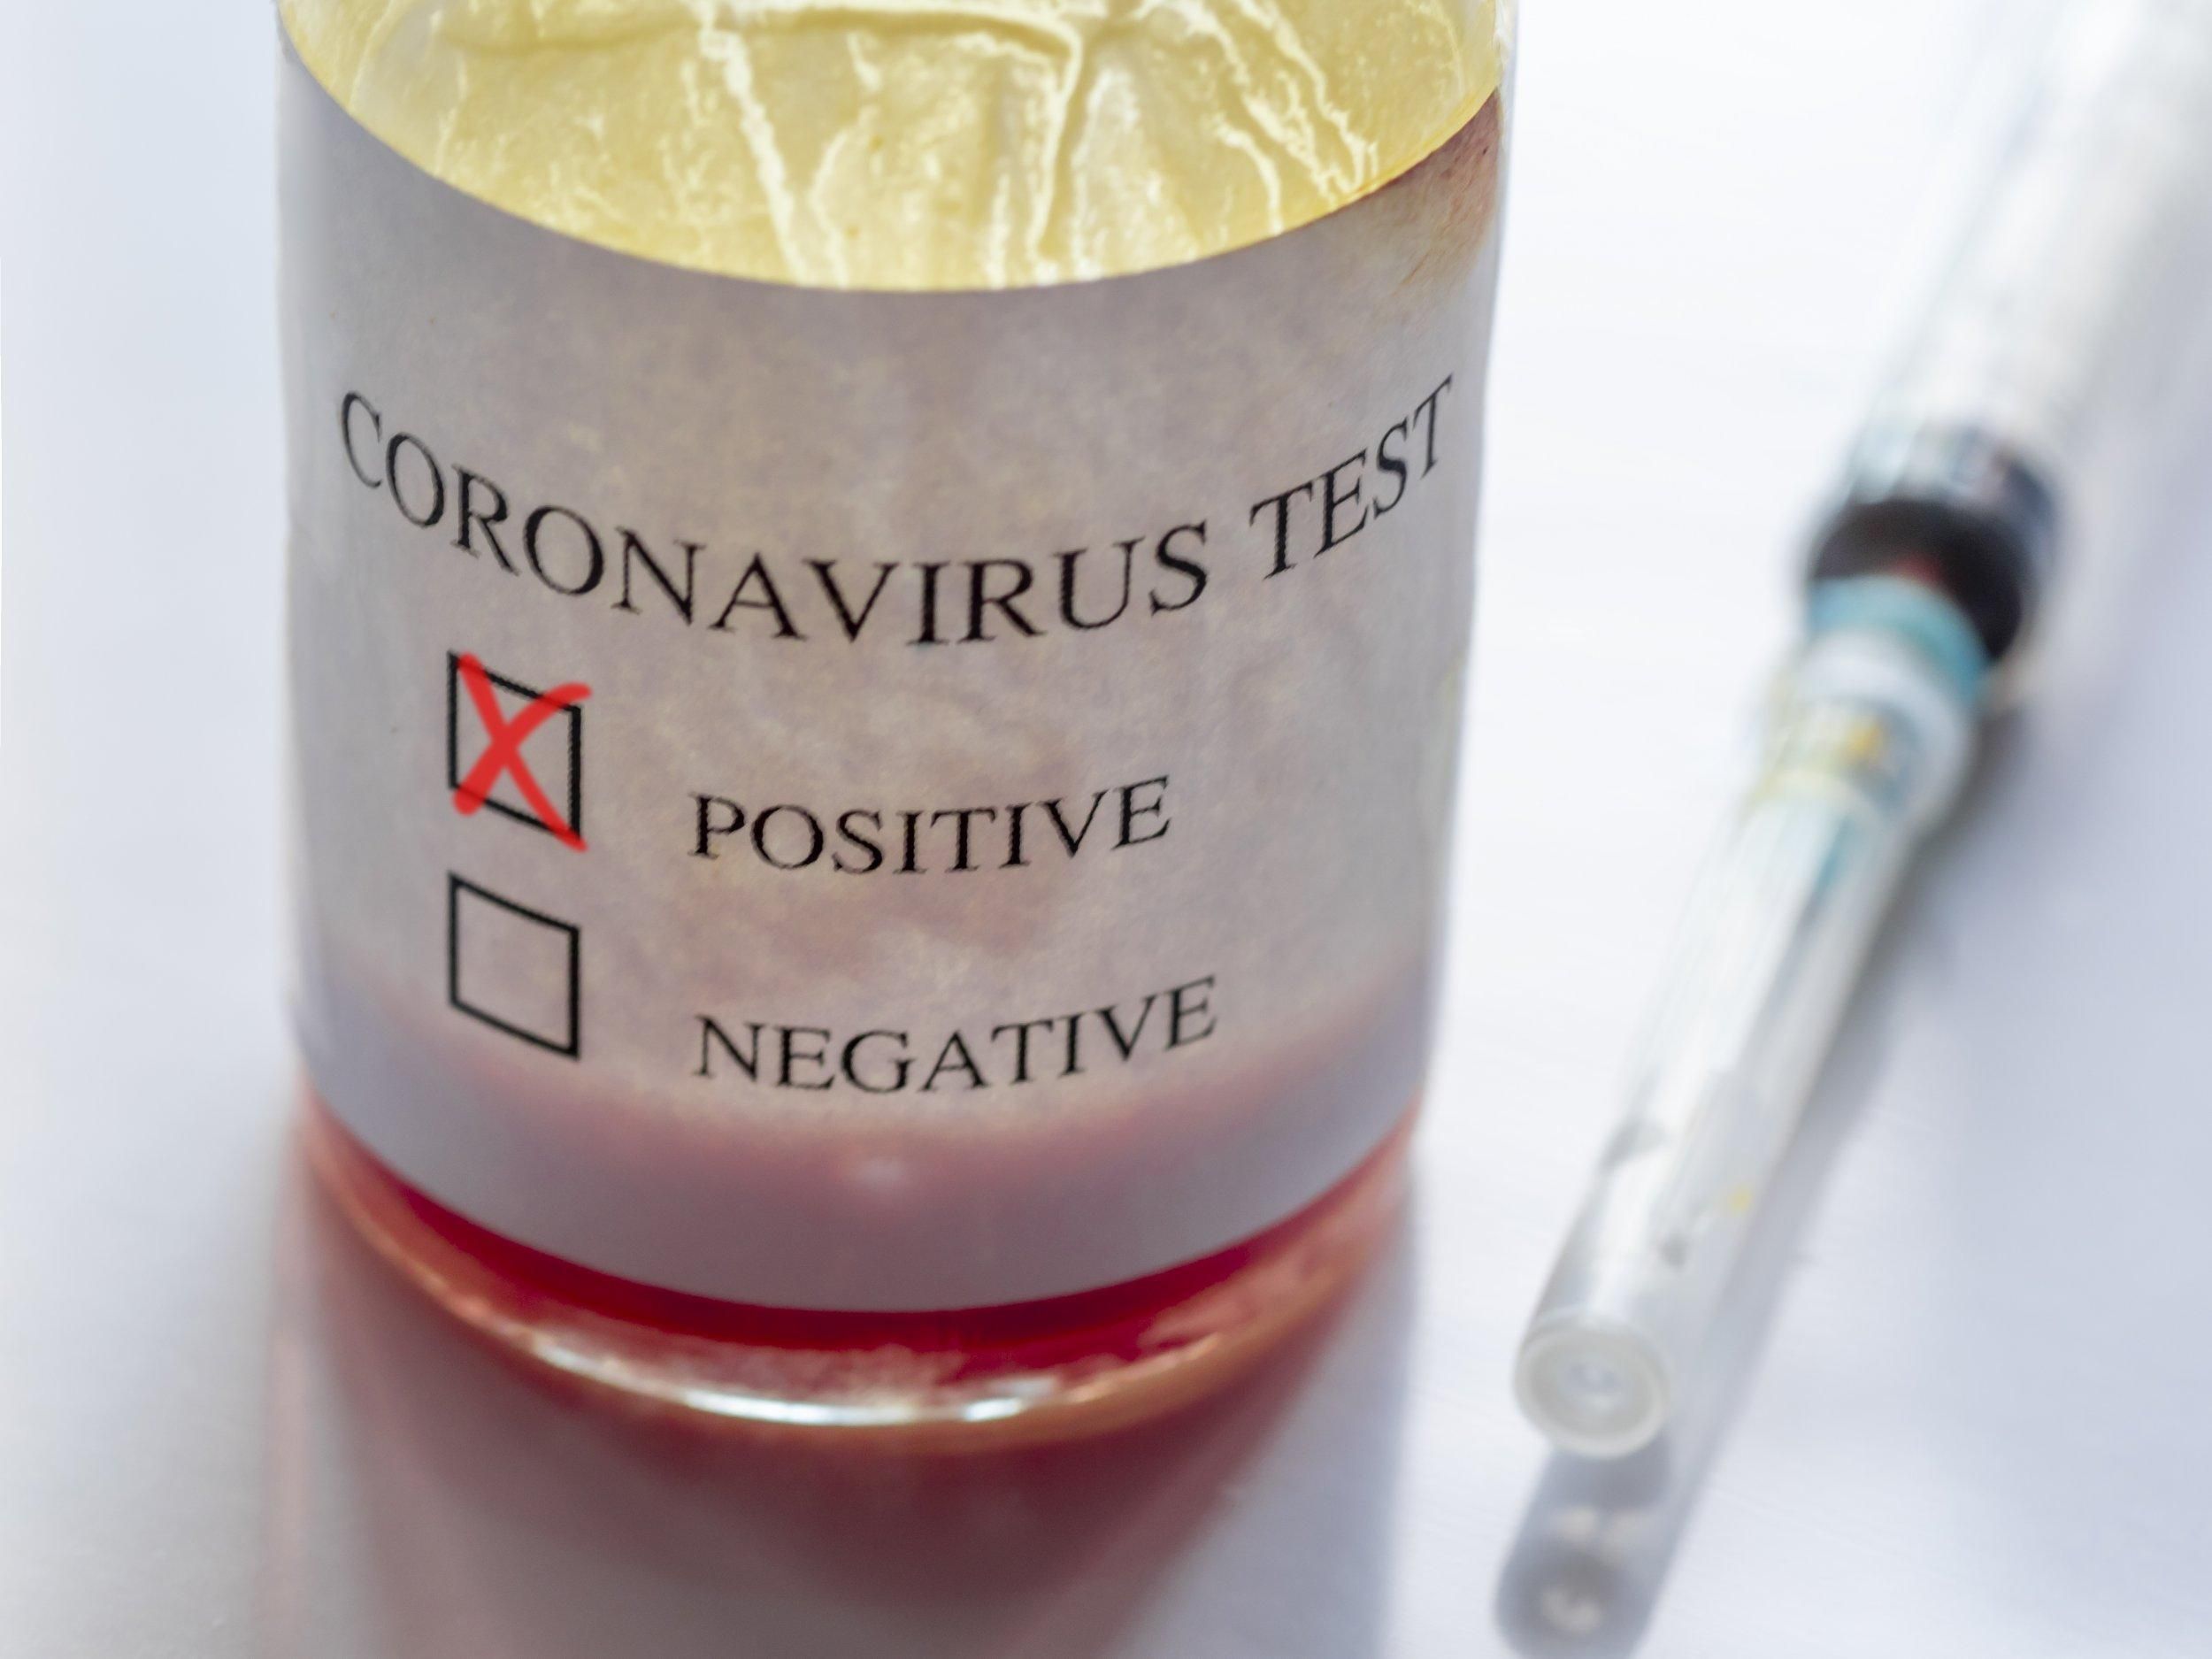 Франция усилила карантин из-за коронавируса жесткими запретами